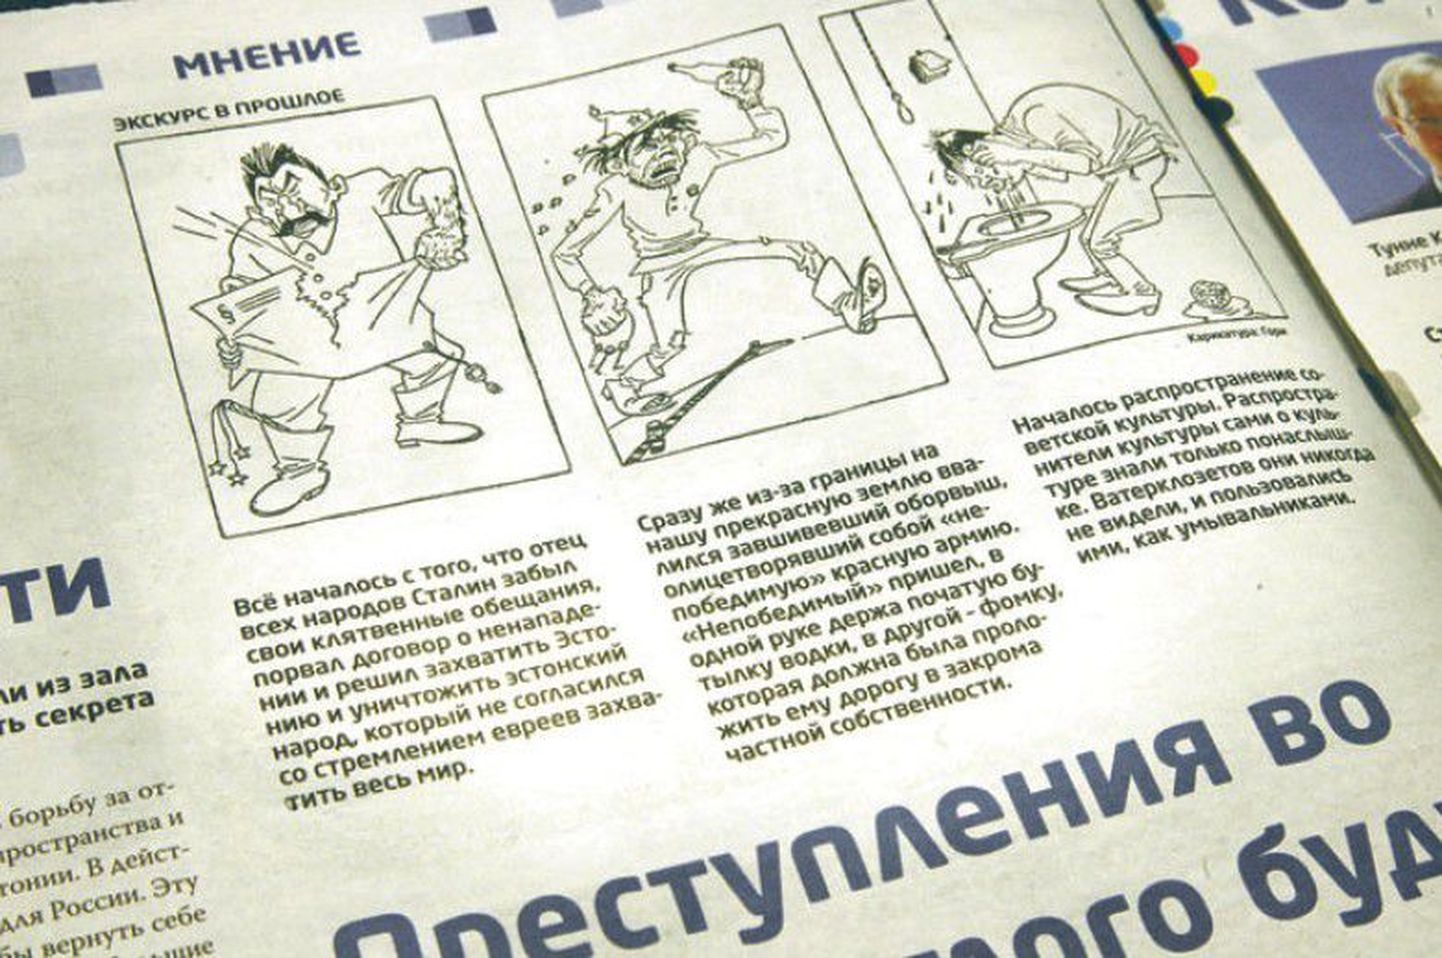 Эти карикатуры и подписи к ним были опубликованы в эстонской и русской версиях издания Eesti Eest.